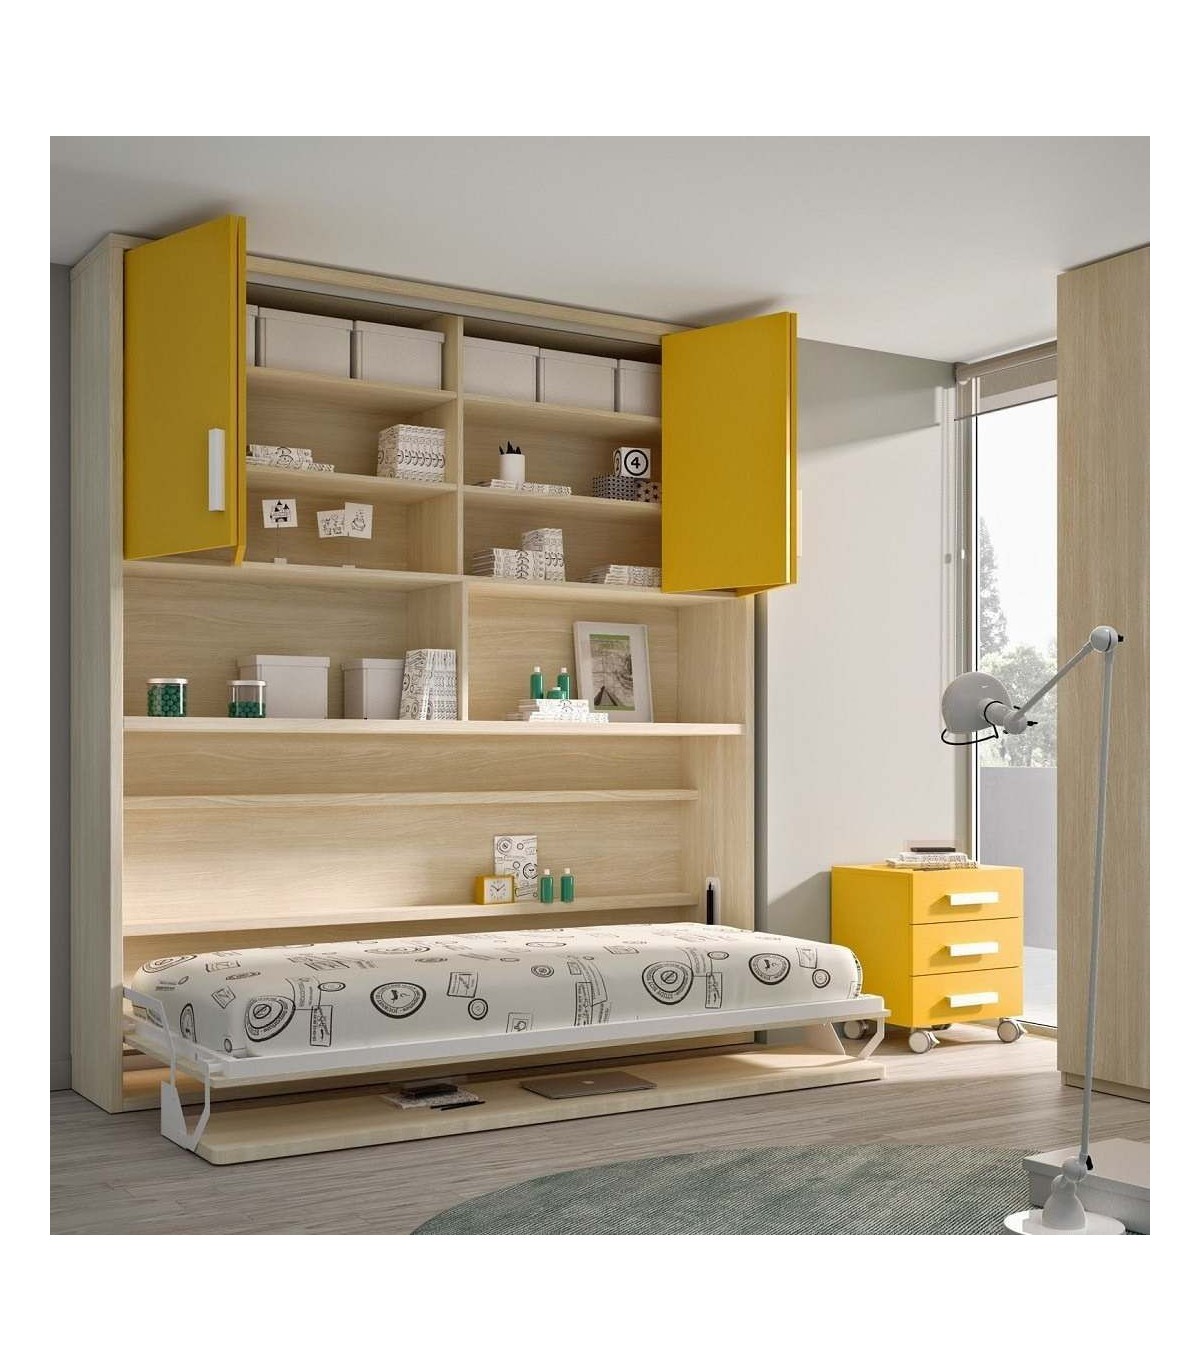 Cama nido alta, armario, estanterías y escritorio – Muebles ROS